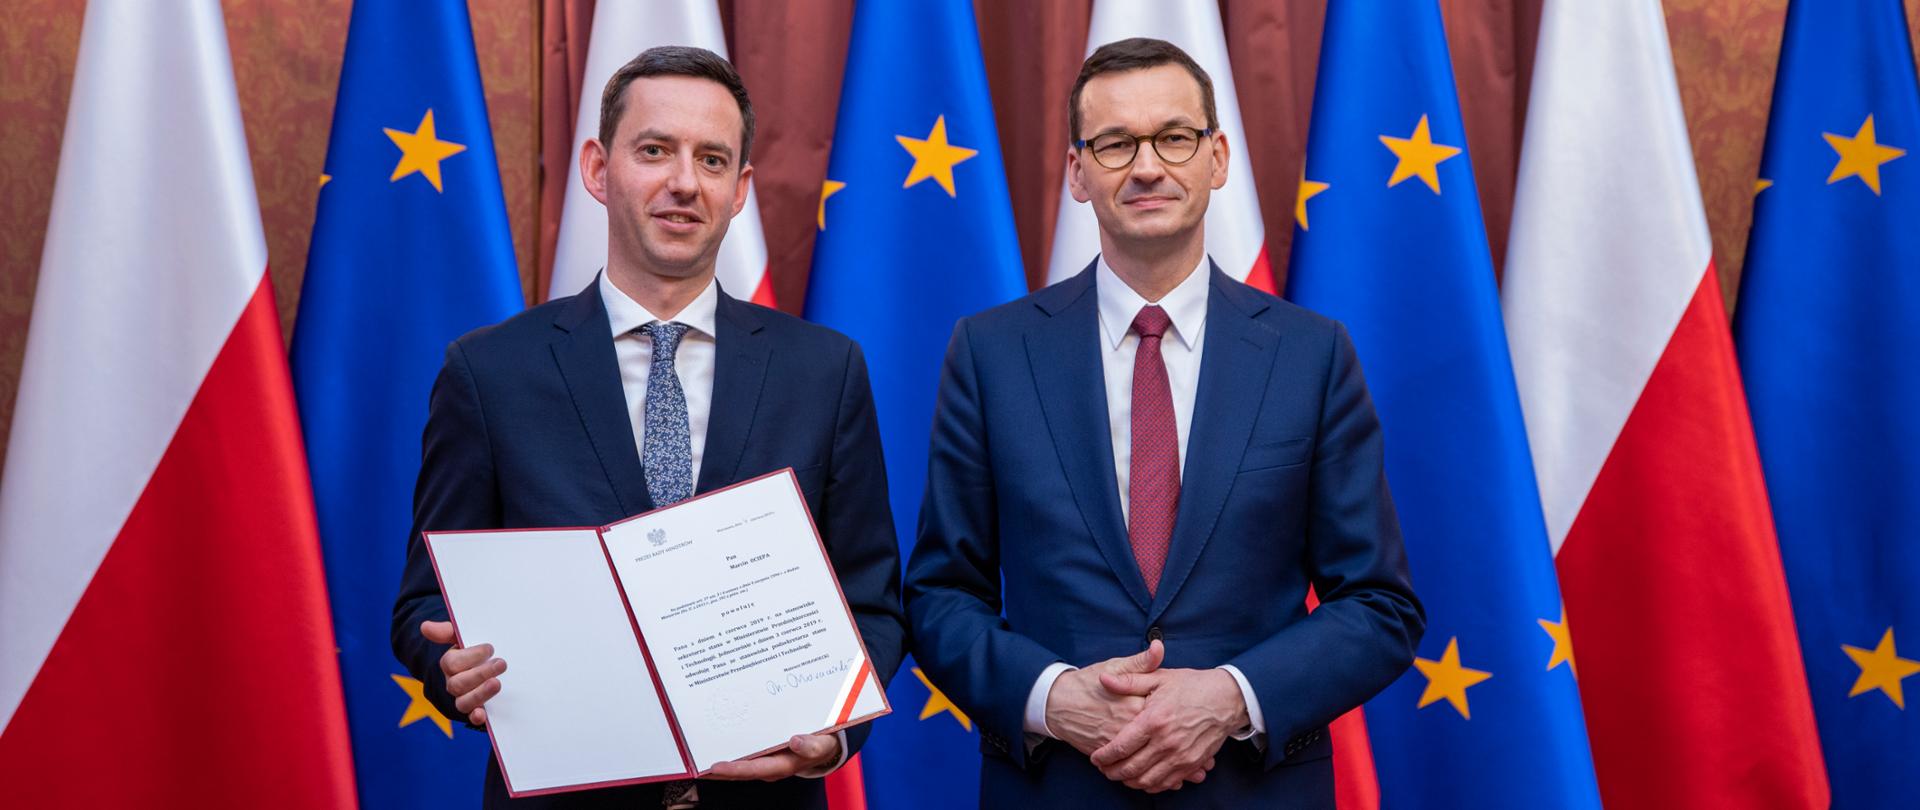 Wiceminister Marcin Ociepa odbiera nominację na Sekretarza Stanu od Premiera w KPRM